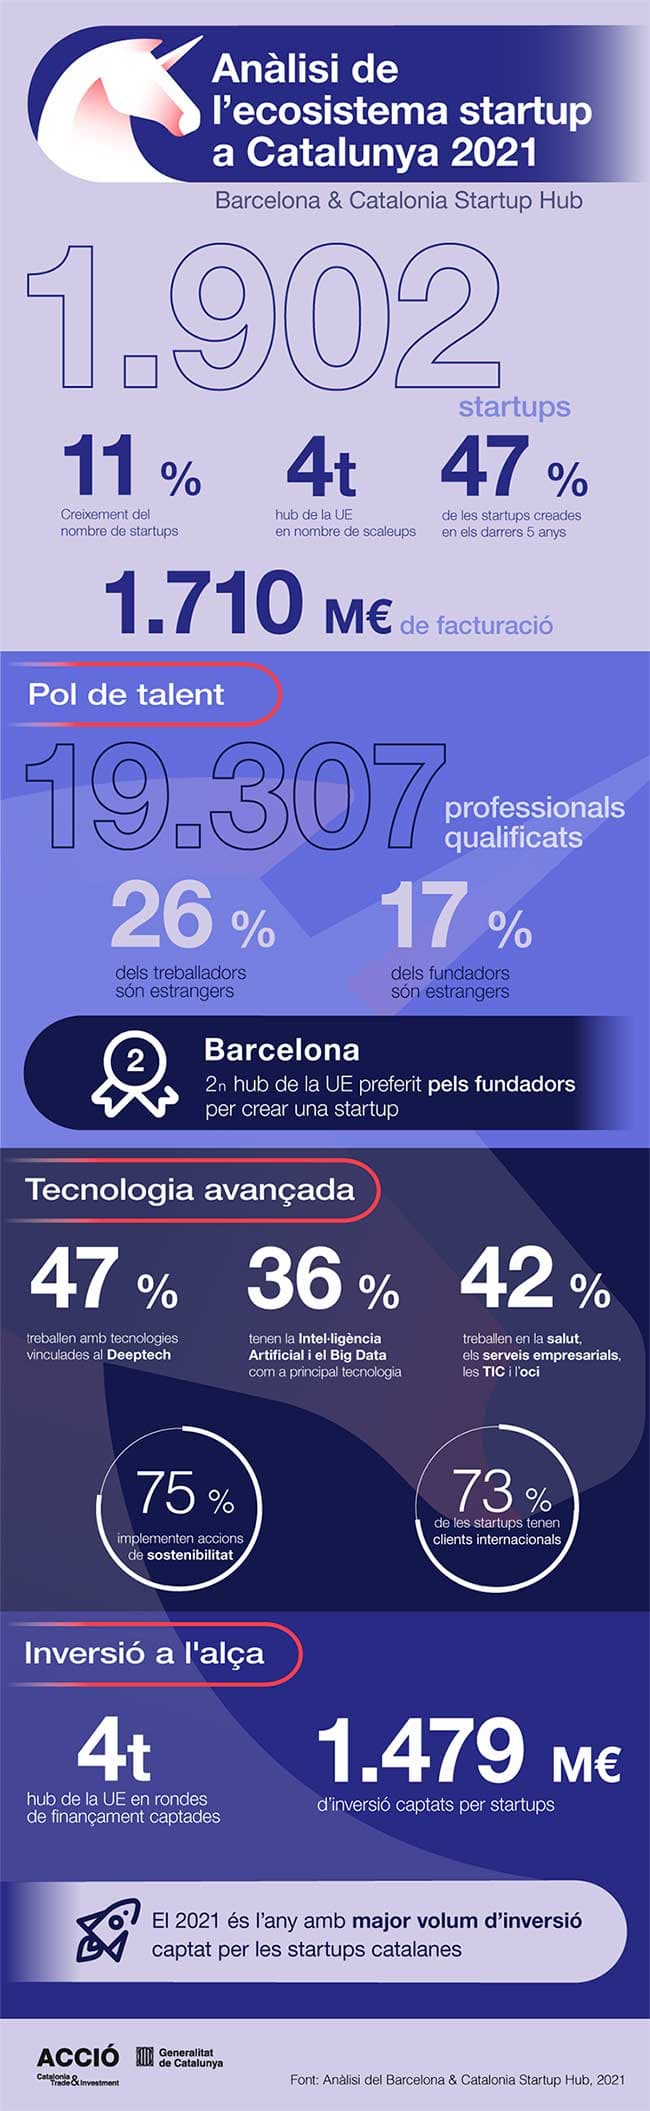 Anàlisi de l'ecosistema startup a Catalunya 2021